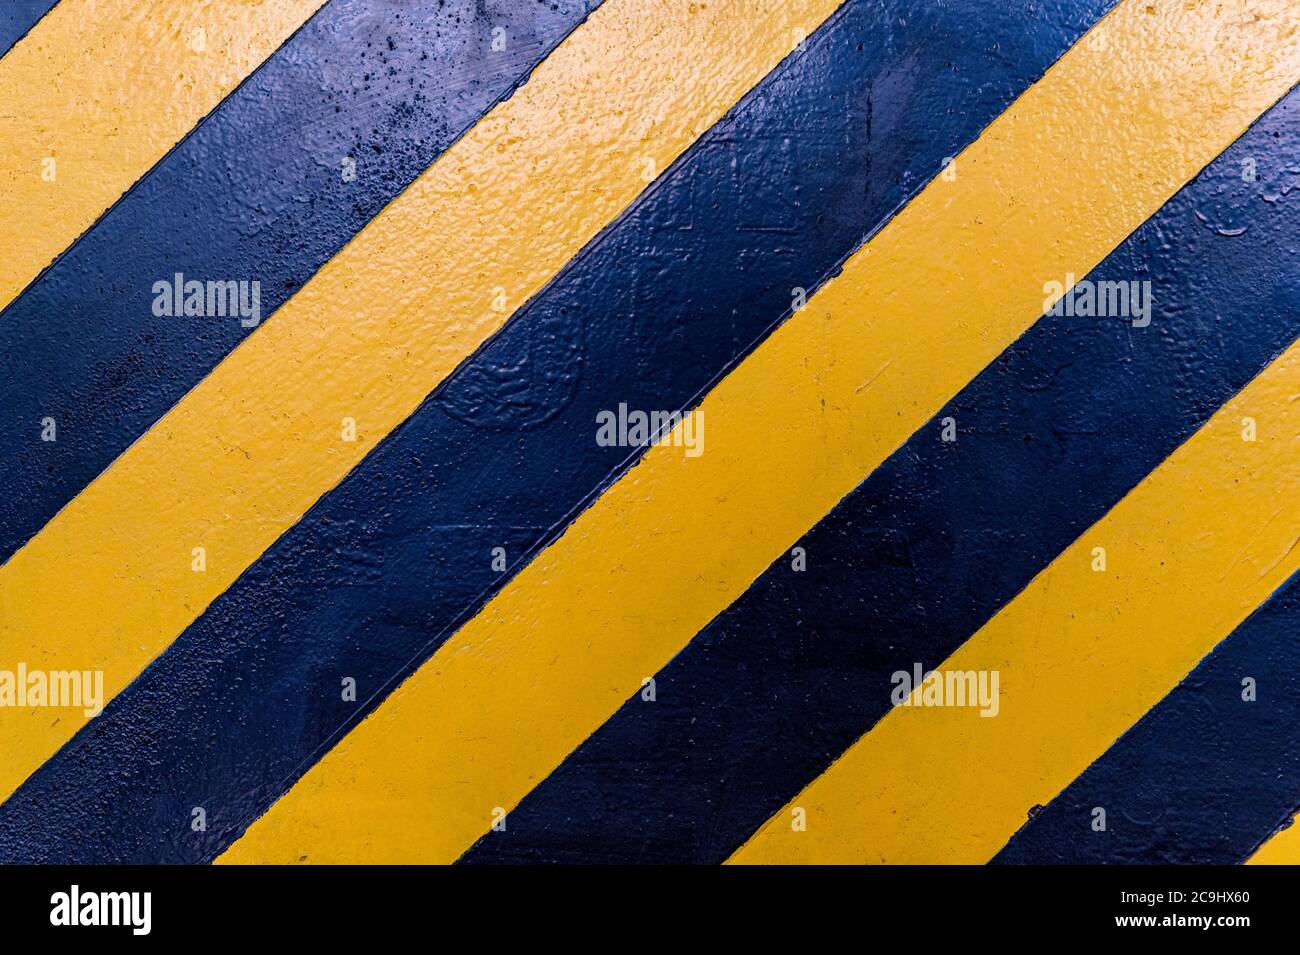 Schwarz-gelbe Streifen an der Wand. Warnschild Stockfoto